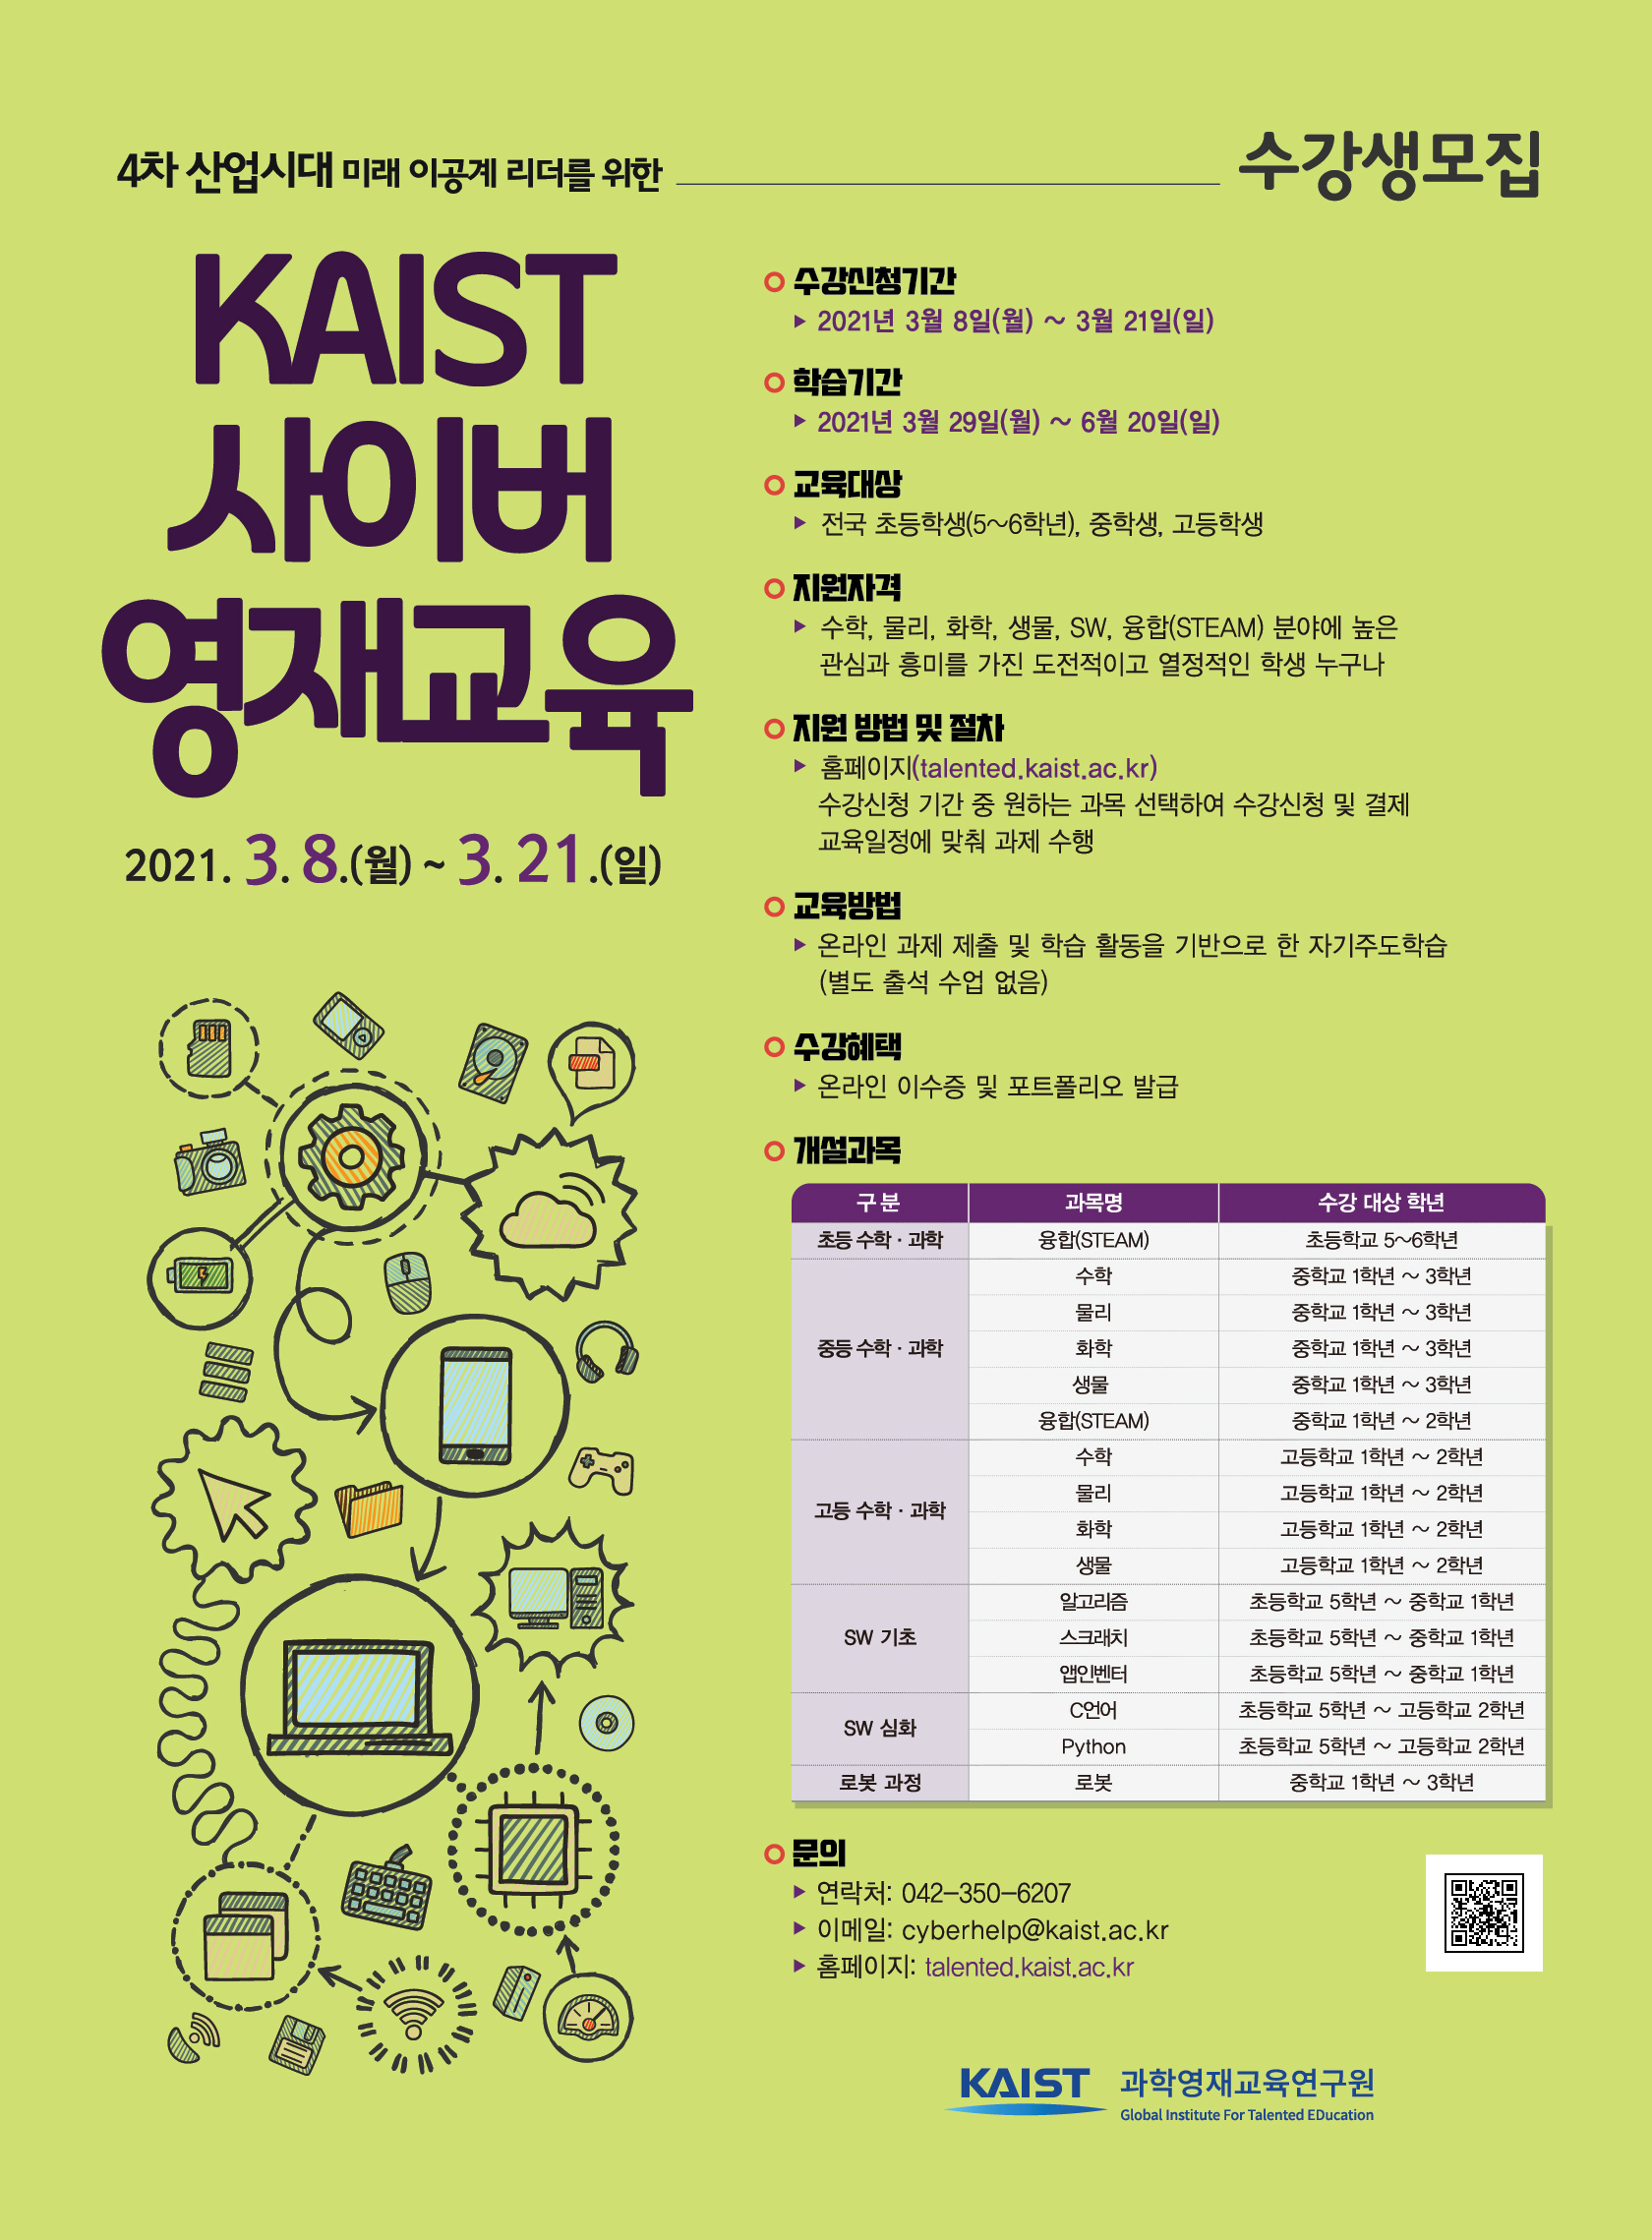 한국과학기술원(kaist) 영재교육센터_2021년 1학기 KAIST 사이버영재교육 수강생 모집 안내 포스터